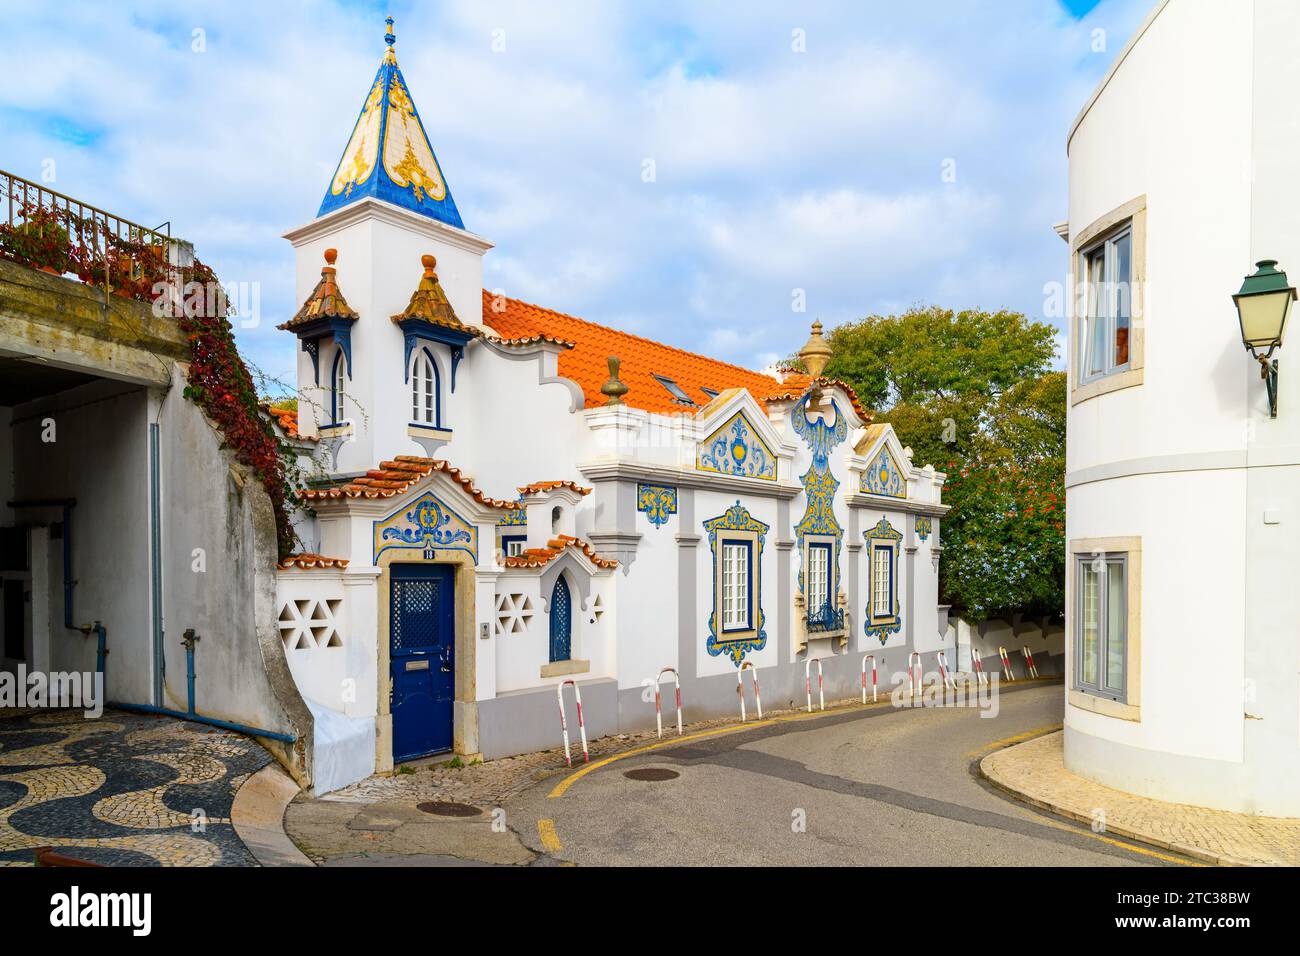 Une maison richement décorée avec des carreaux traditionnels portugais azulejo, la Casa de Santa Maria, dans le quartier historique de Cascais, au Portugal Banque D'Images